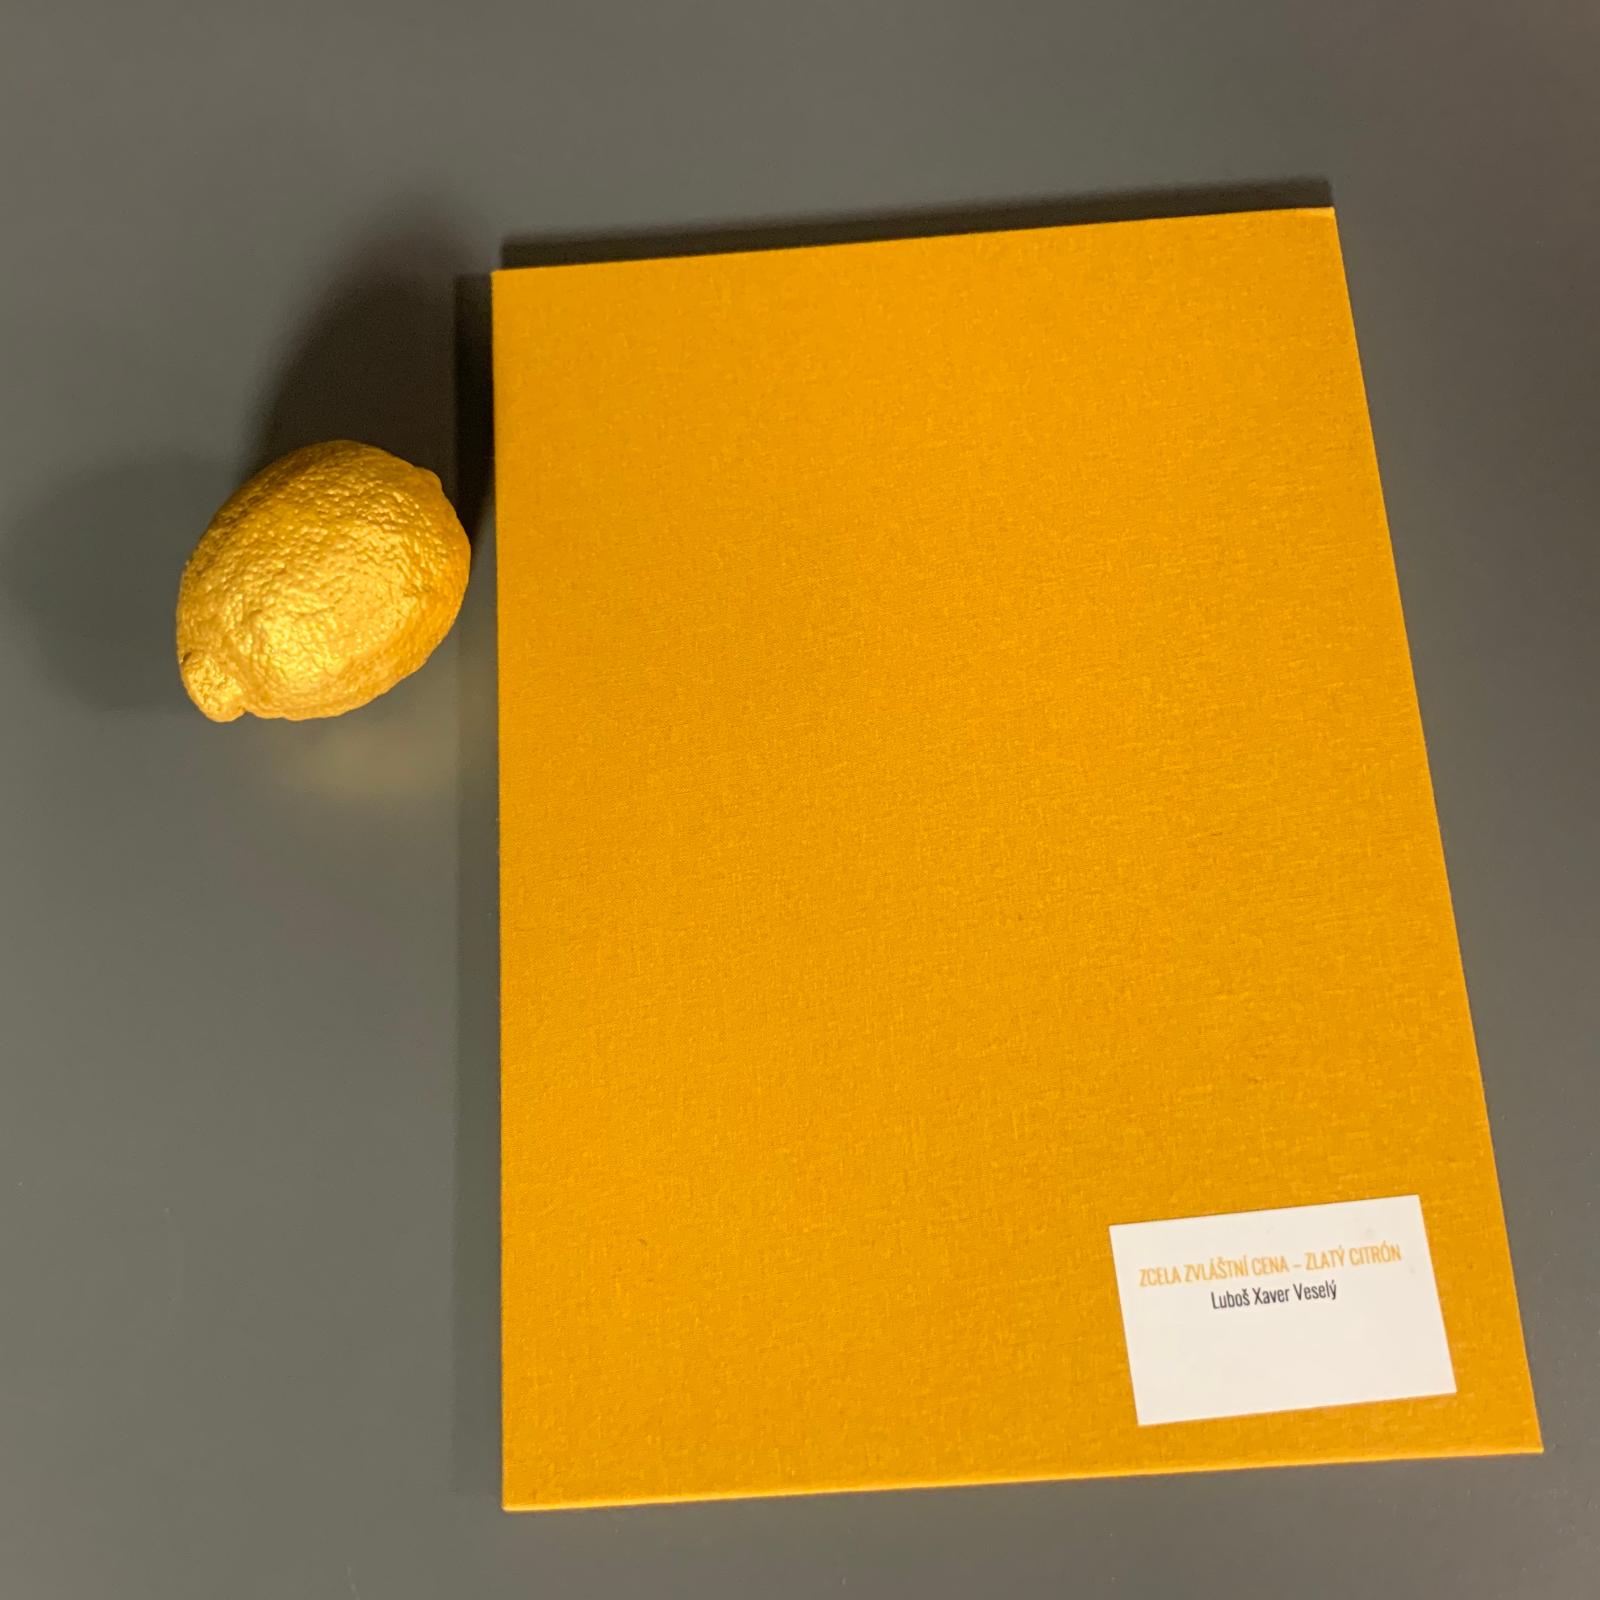 Trilobit - Zlatý citron 2020 Luboši Xaveru Veselému - Sběratelství